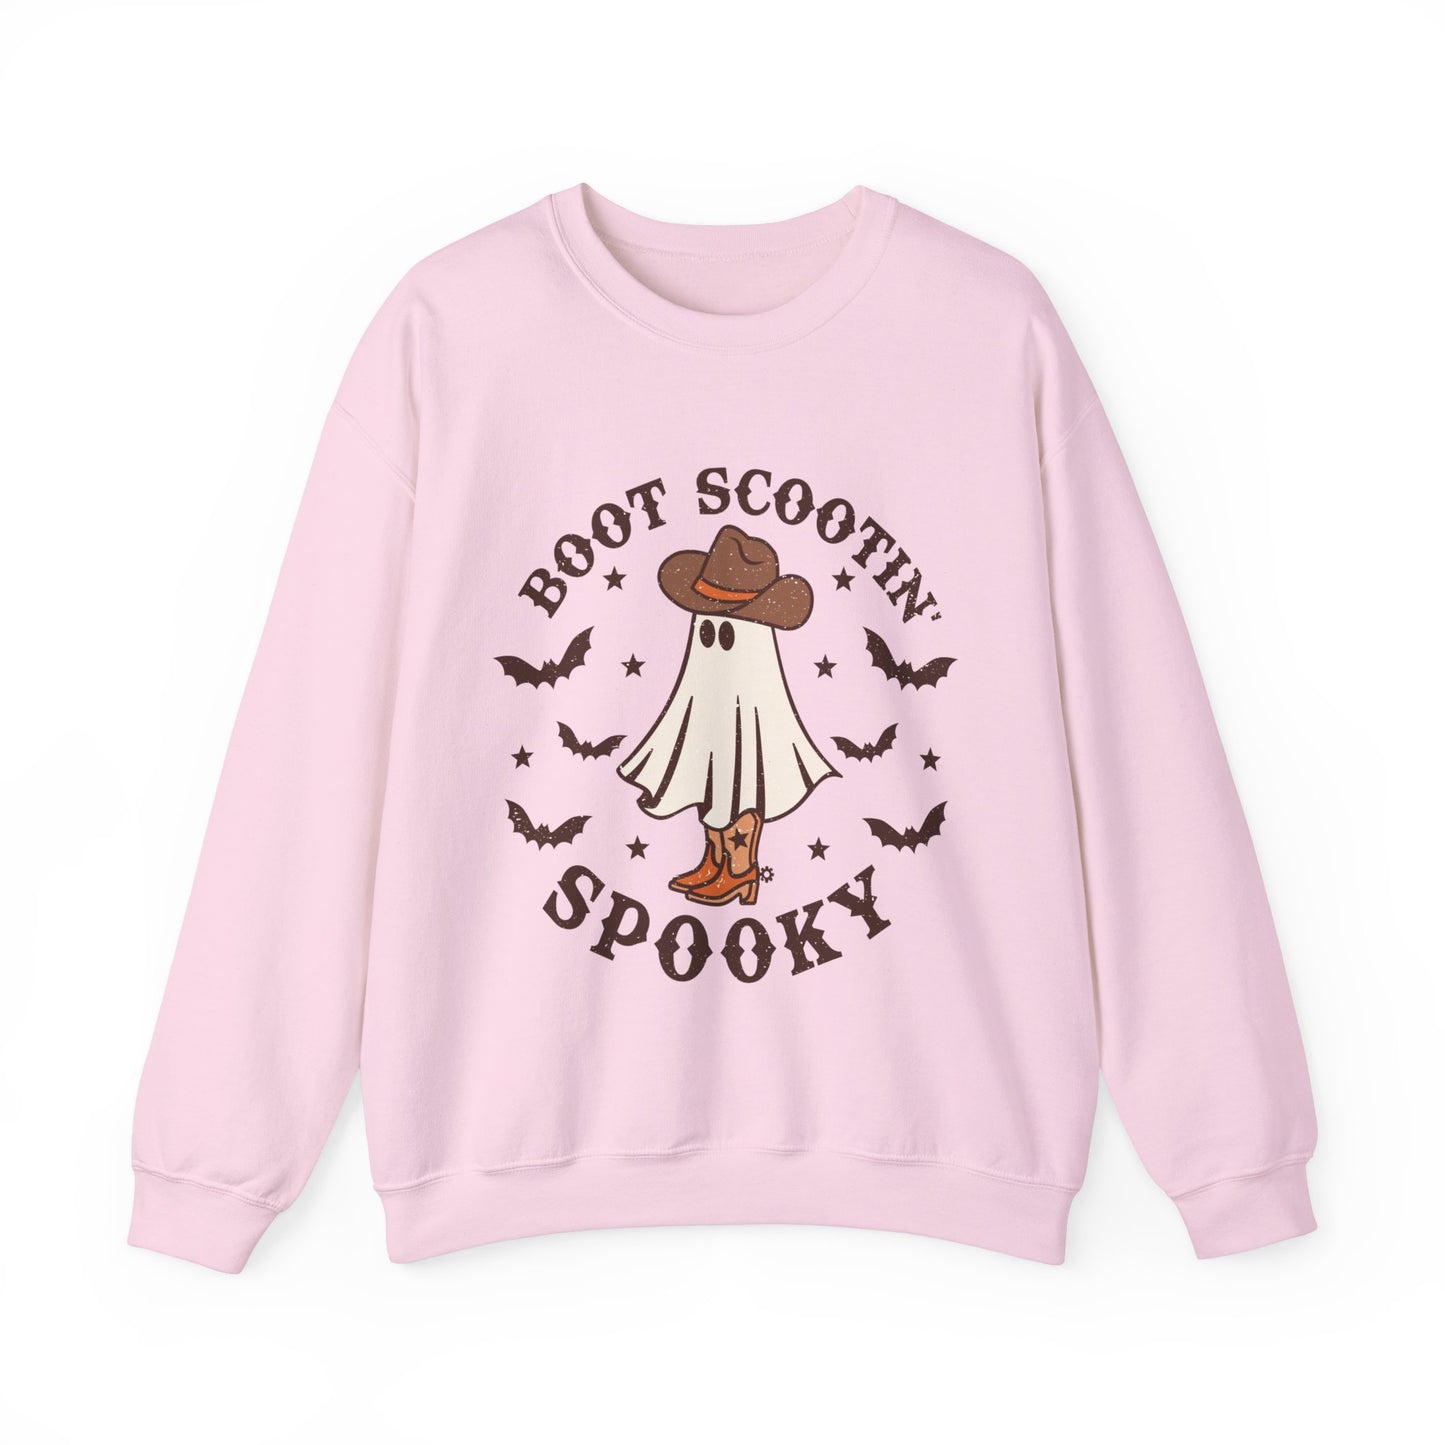 Boot Scootin' Spooky Retro Halloween Sweatshirt